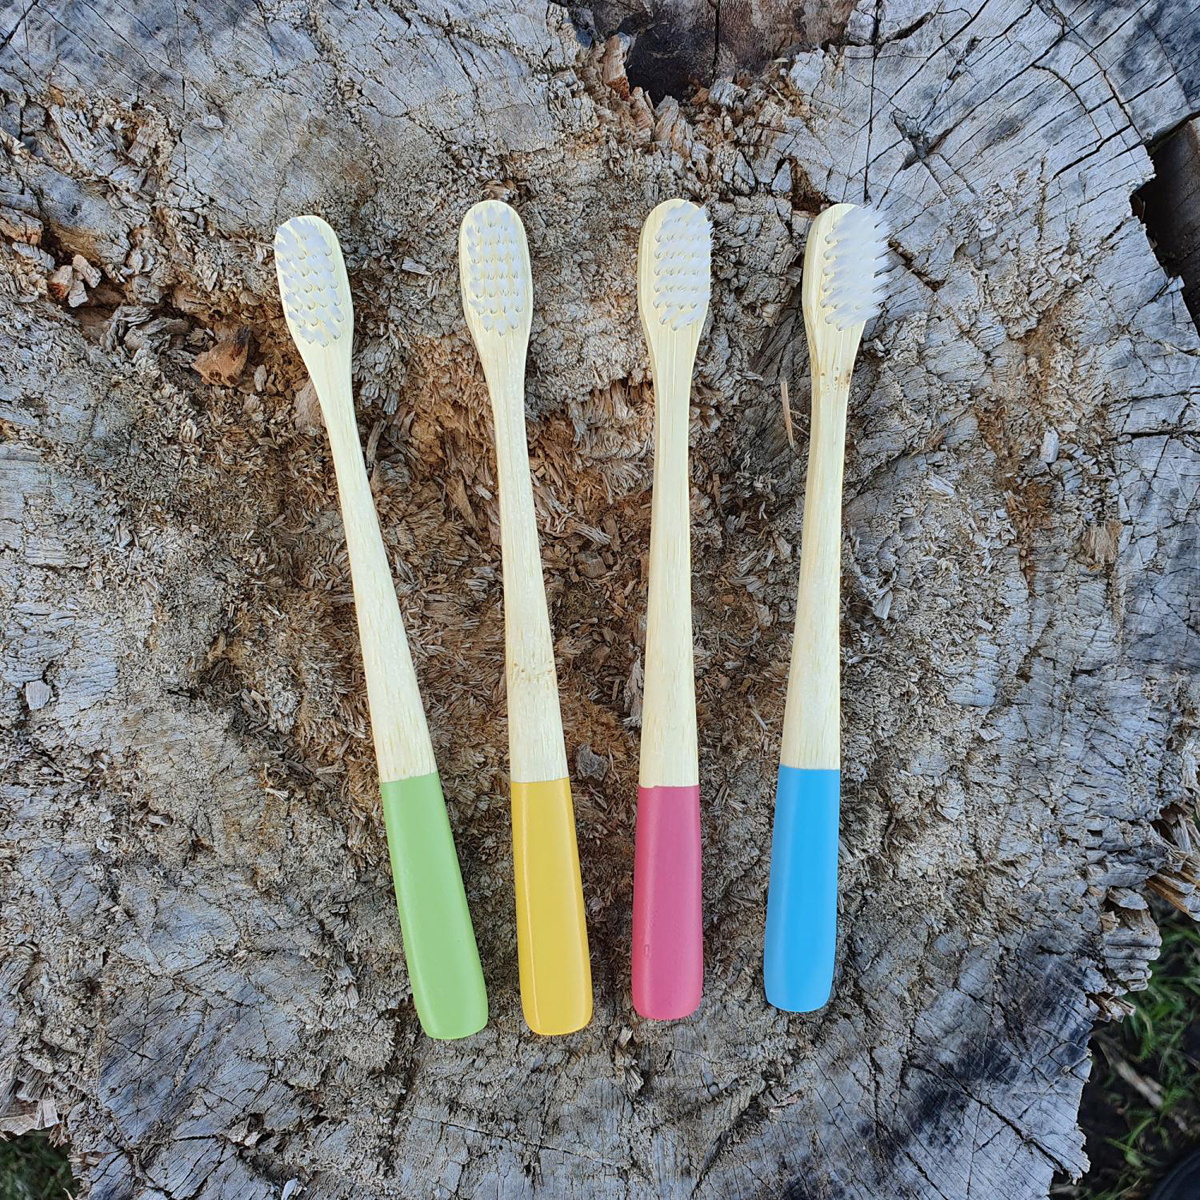 Tandborstar barn 4 pack bambu med nylonborst gul, grön, röd, blå